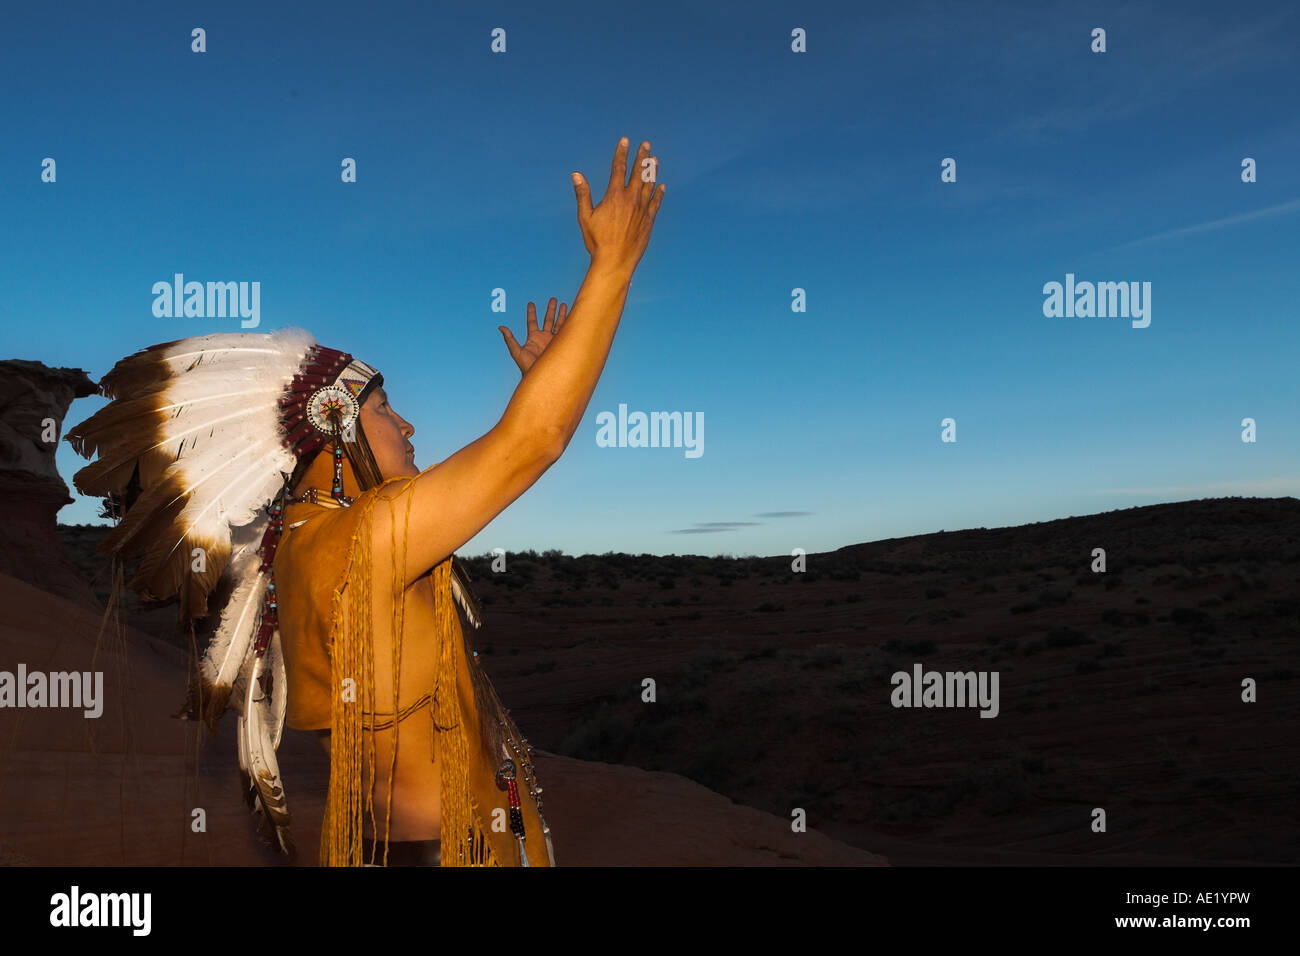 Native American Indian man avec équipement culturel coiffure modèles de conception uniforme de plumes bracelet en cuir nature coucher du soleil lever du soleil Banque D'Images